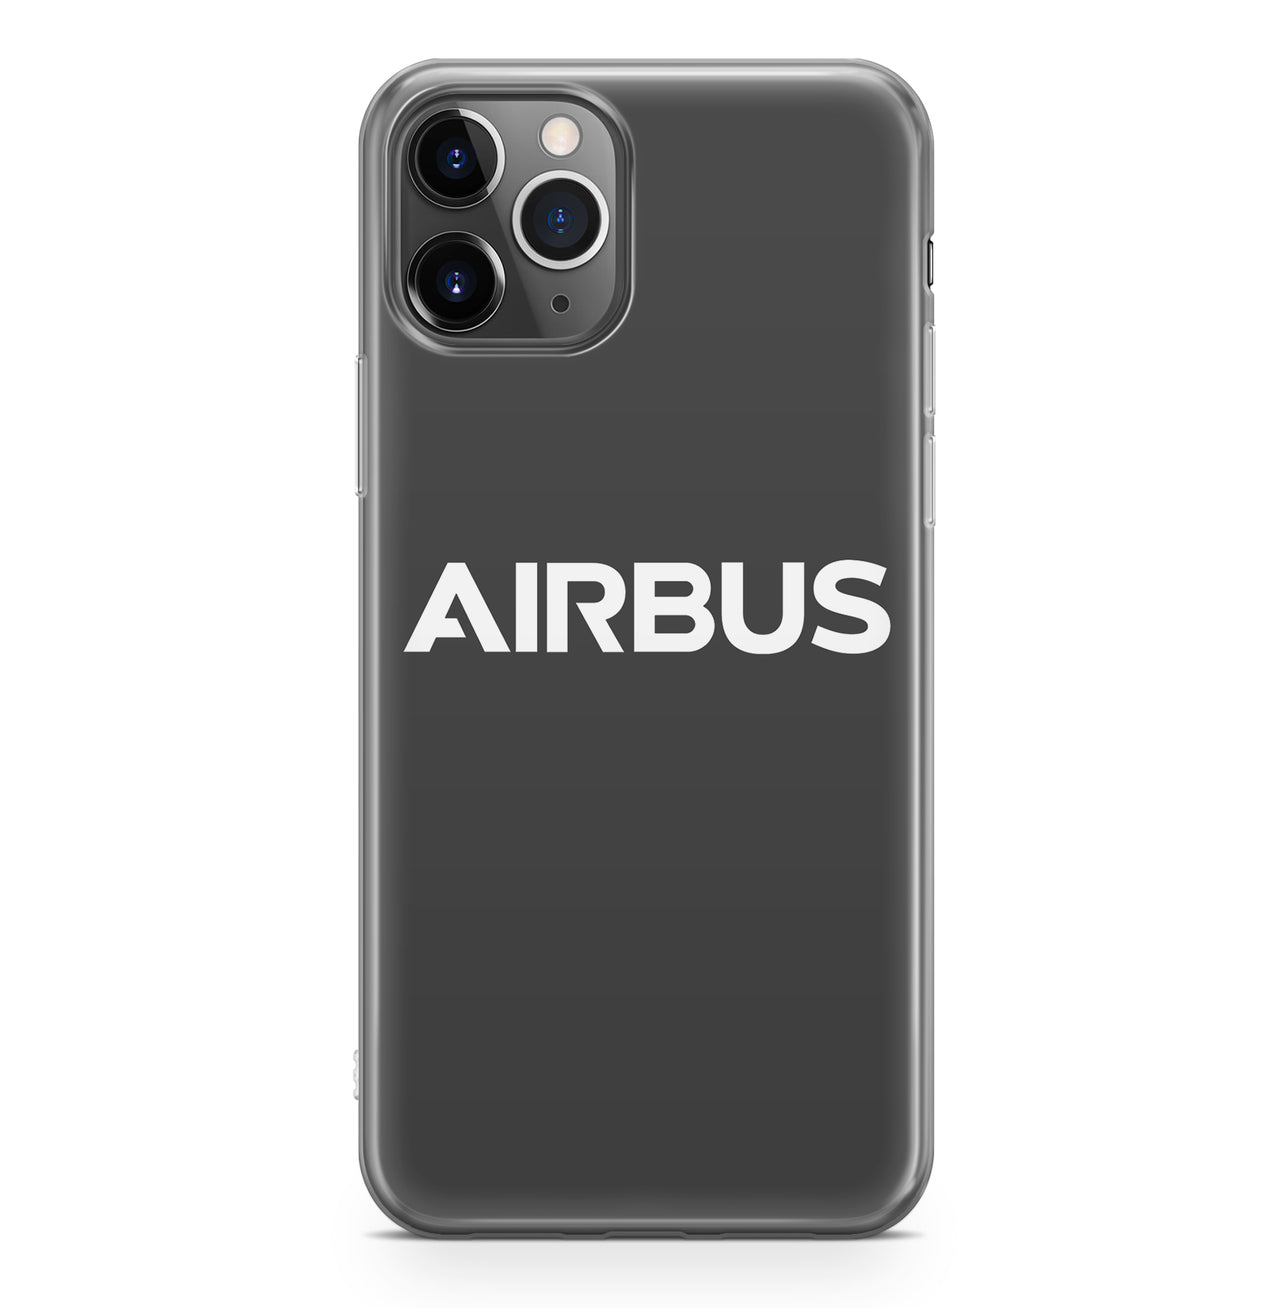 Airbus & Text Designed iPhone Cases